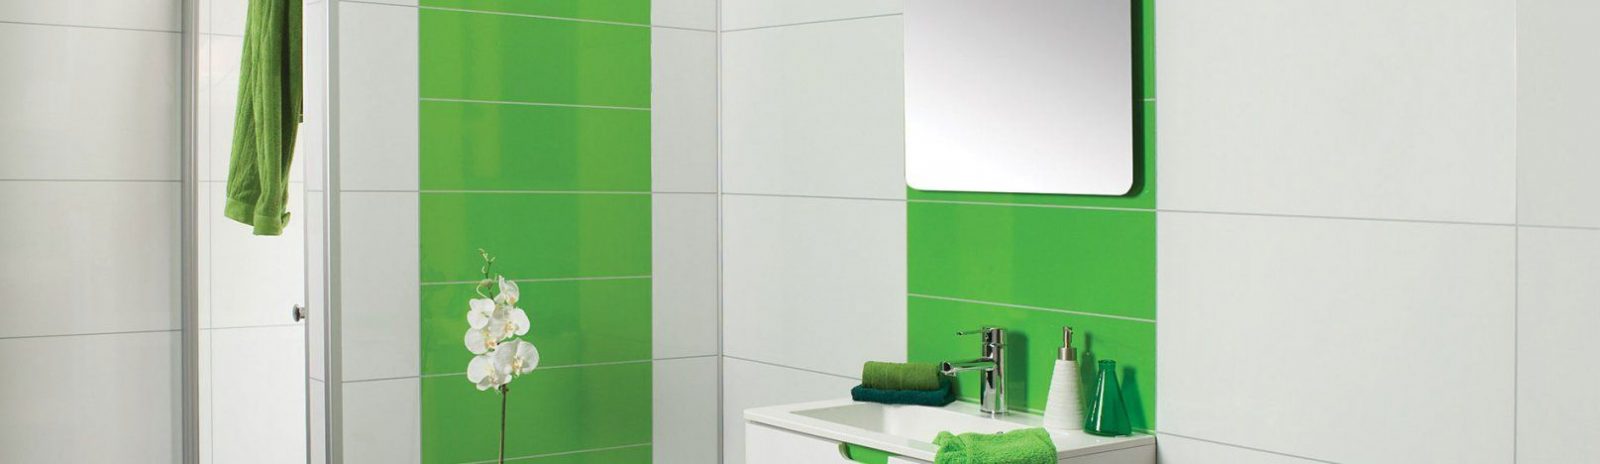 Duschecke – Modernisiert Wände In Dusche – Bad – Wc von Dusche Wandverkleidung Ohne Fugen Photo